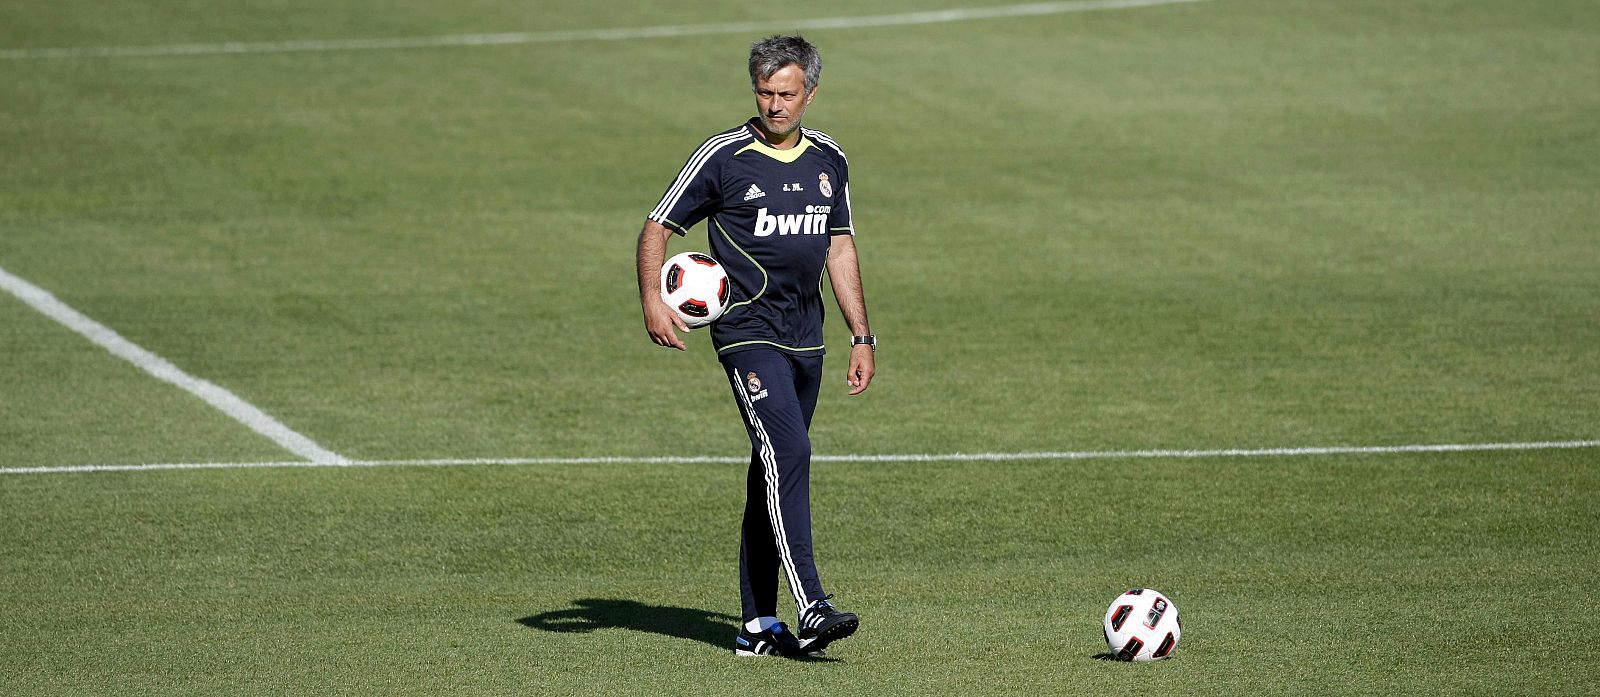 Jose Mourinho pondrá a prueba y tratará de convencer con su estilo durante la pretemporada con el Real Madrid.